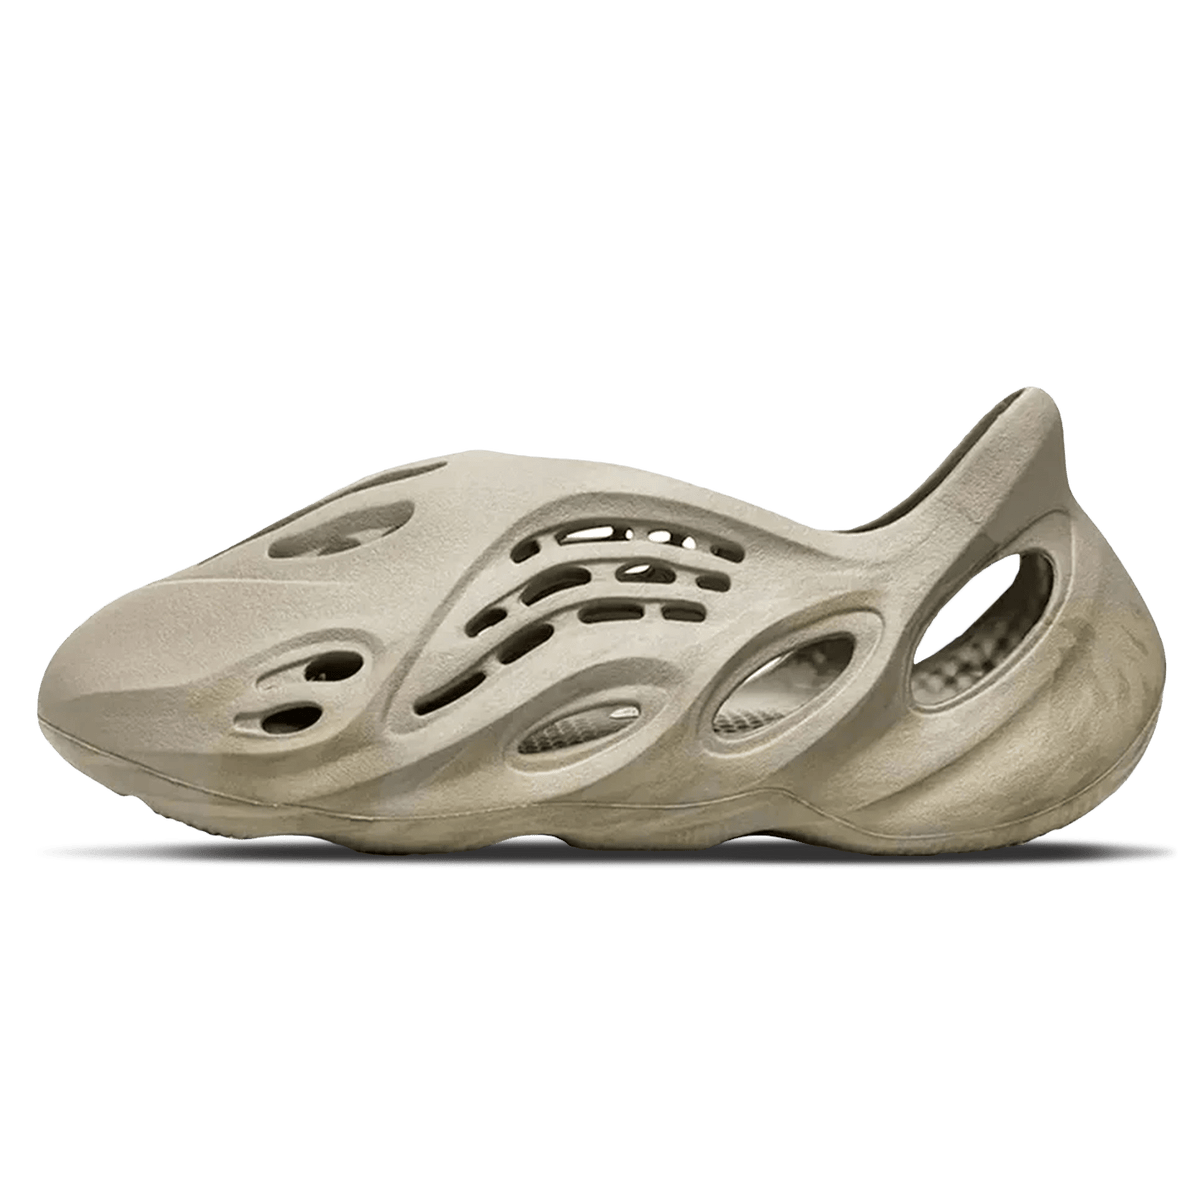 adidas Yeezy Foam Runner 'Stone Salt' - JuzsportsShops